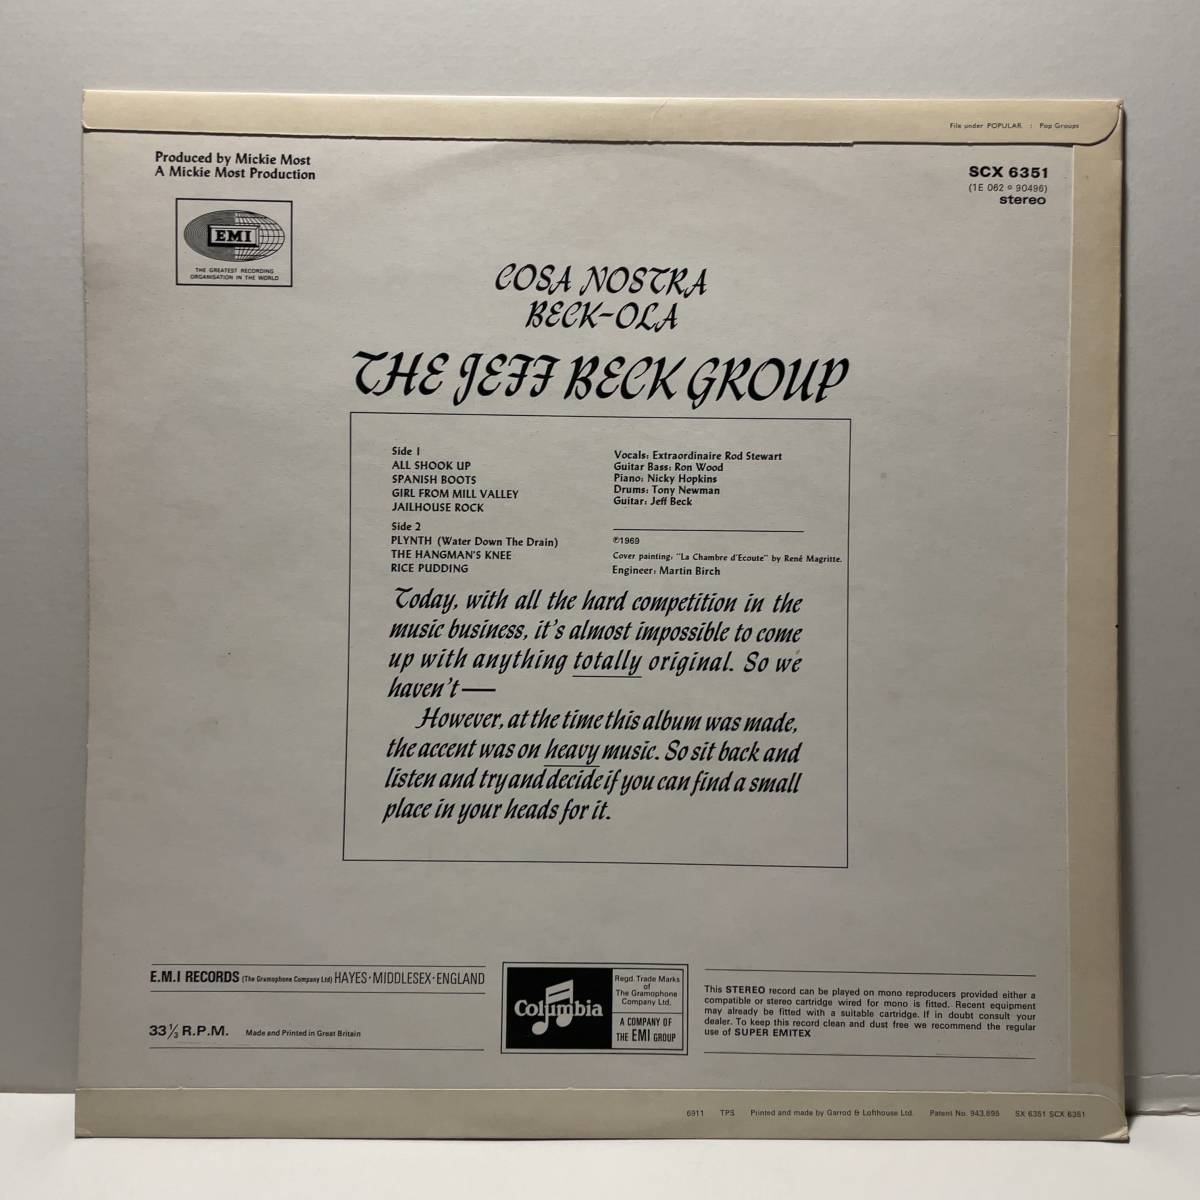 Vinyl レコード Jeff Beck Group Beck-Ola SCX 6351 UK PRESSING(1969) STEREO 1EMI LOGO LABEL_画像3